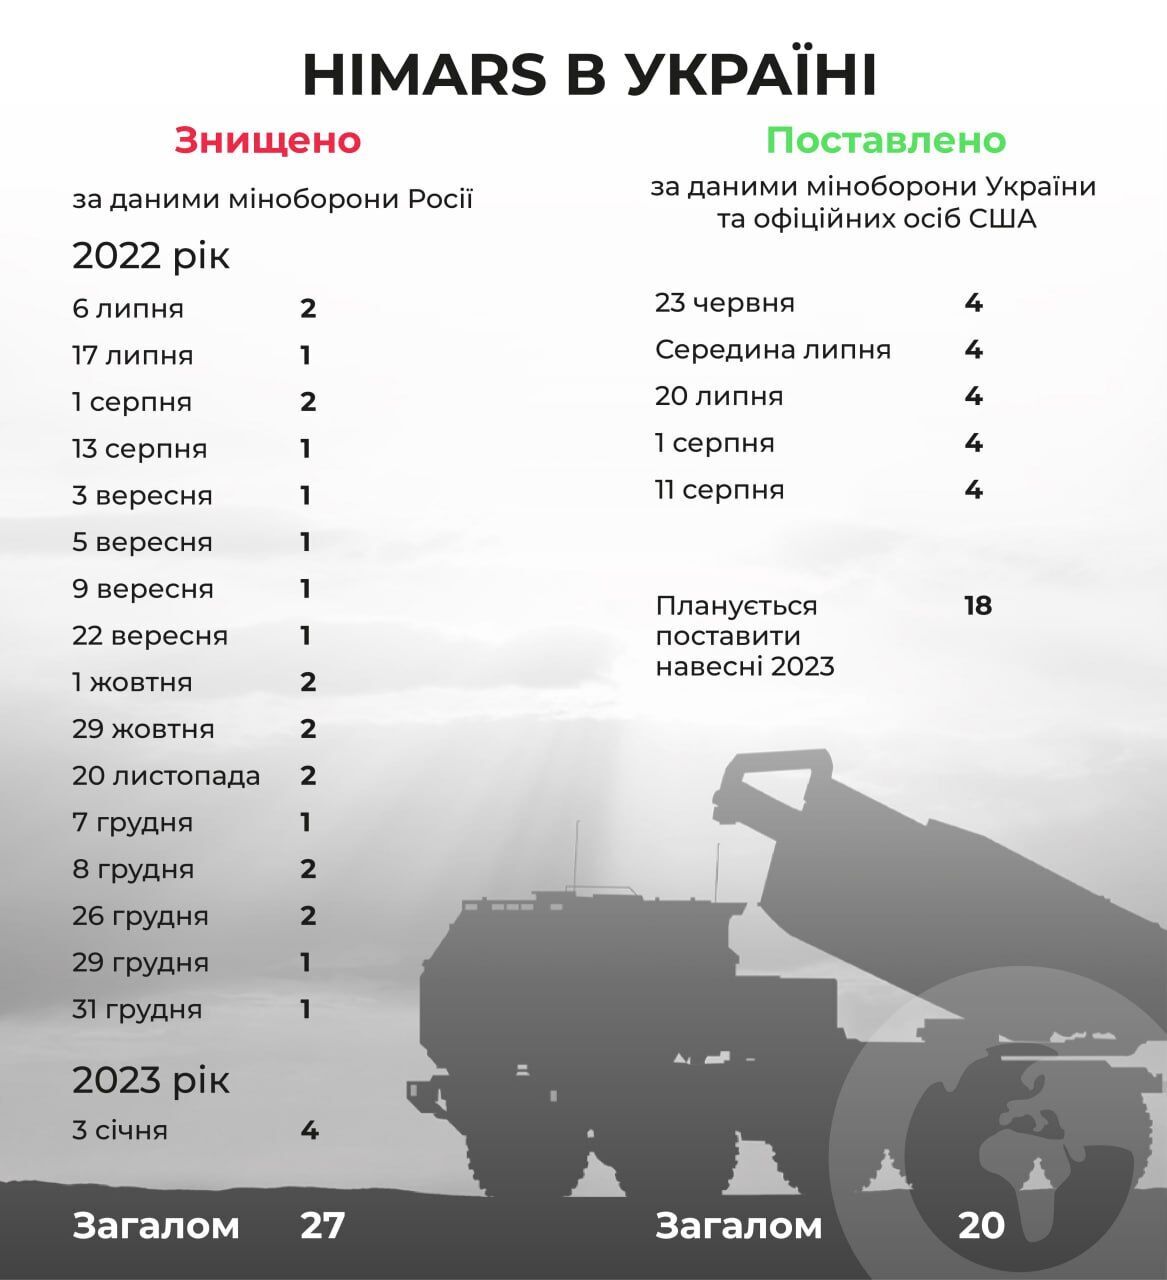 В российском минобороны уже ''уничтожили'' больше HIMARS, чем США передали Украине. Инфографика